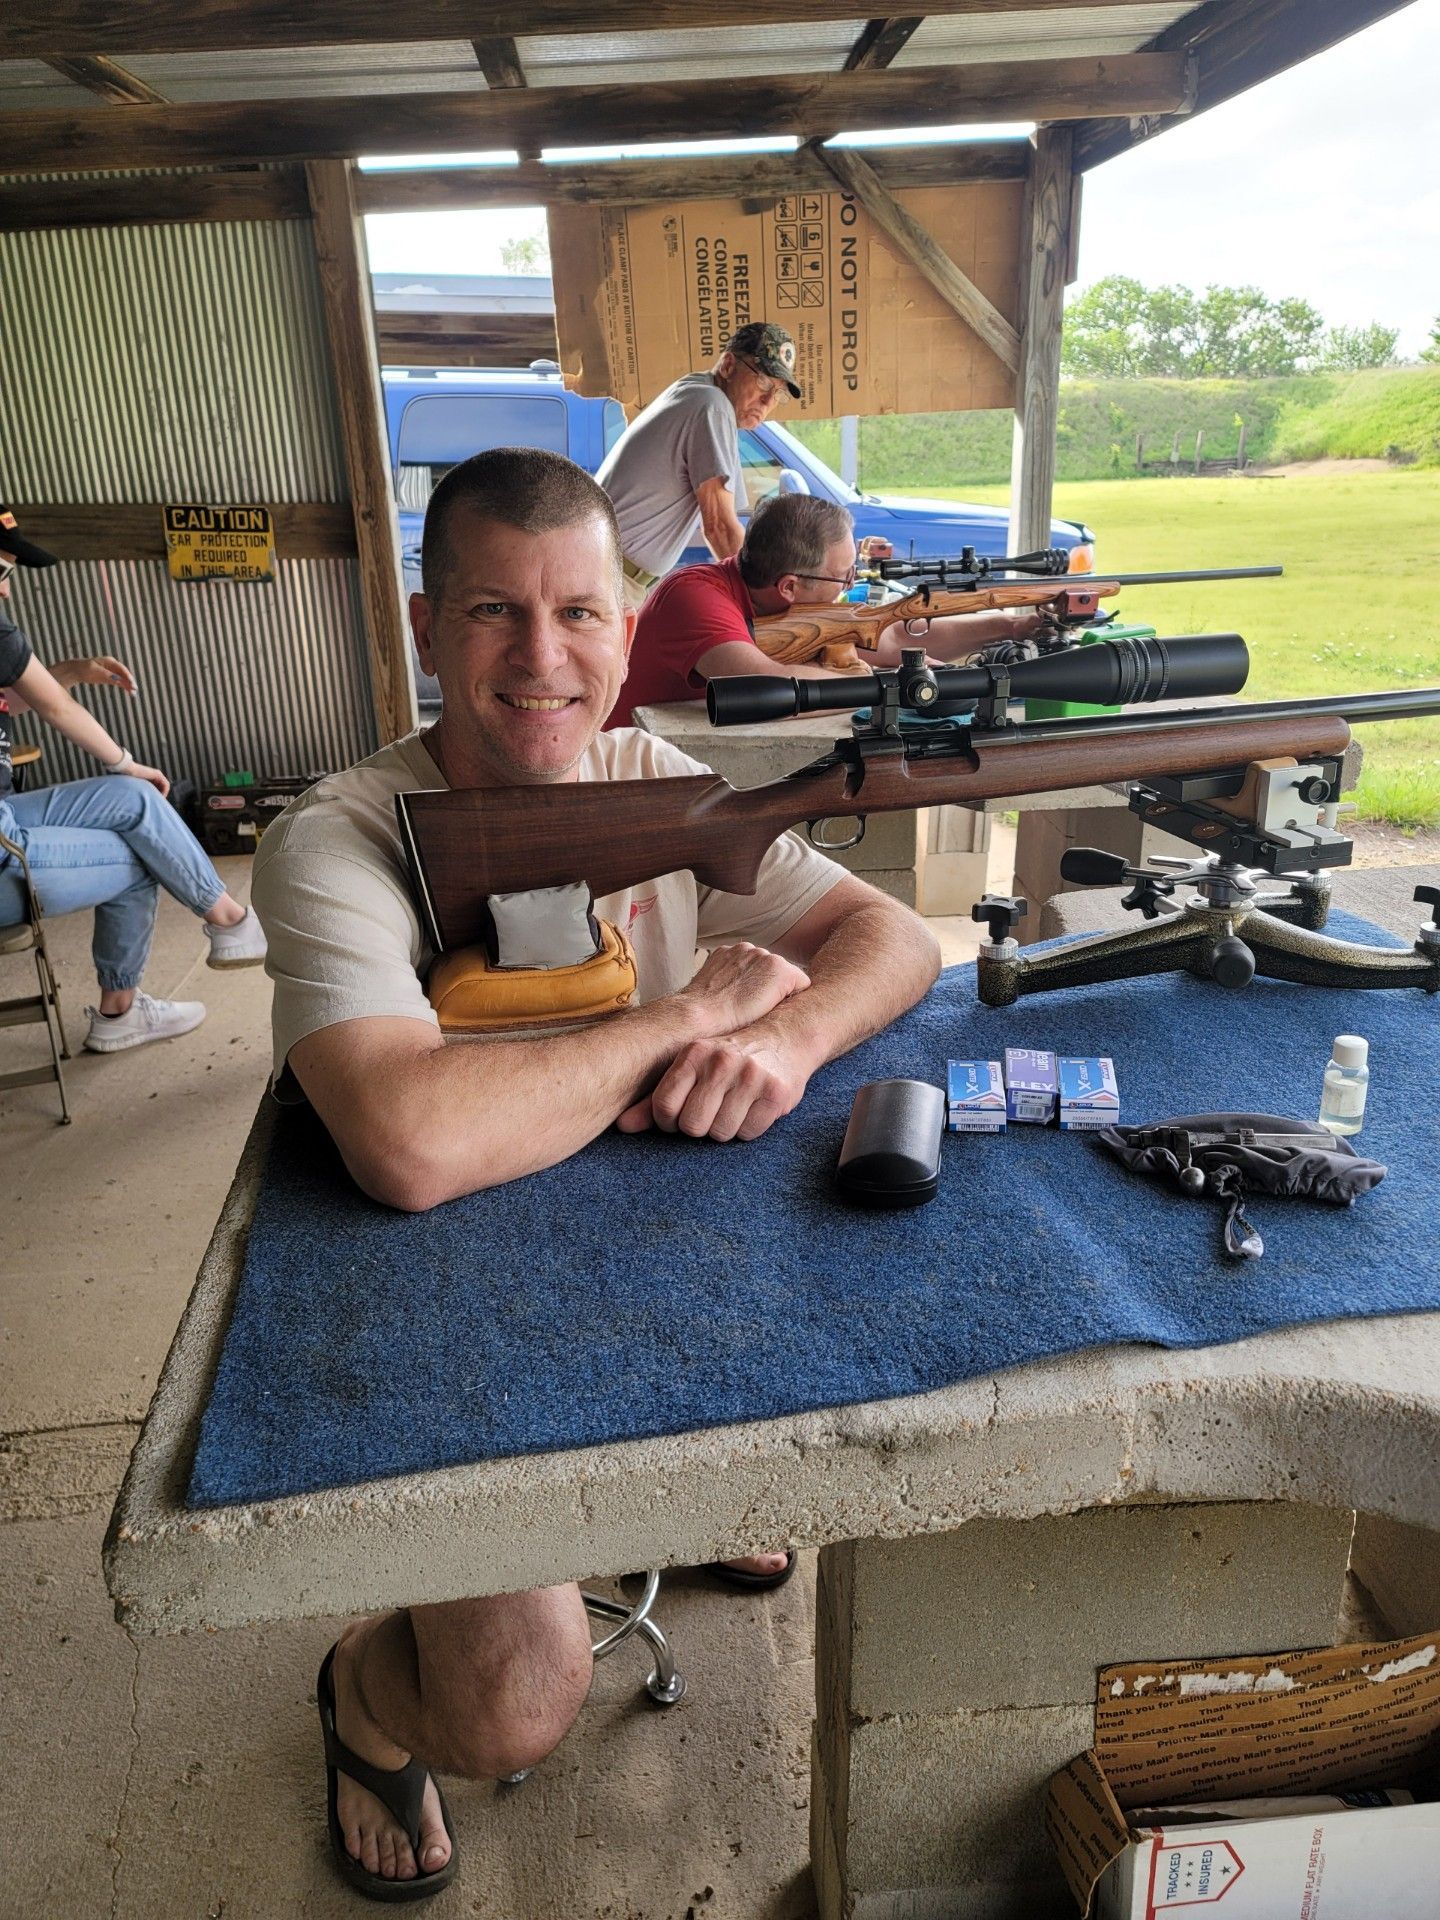 man in tan shirt smiling at camera sitting at gun range table next to rifle